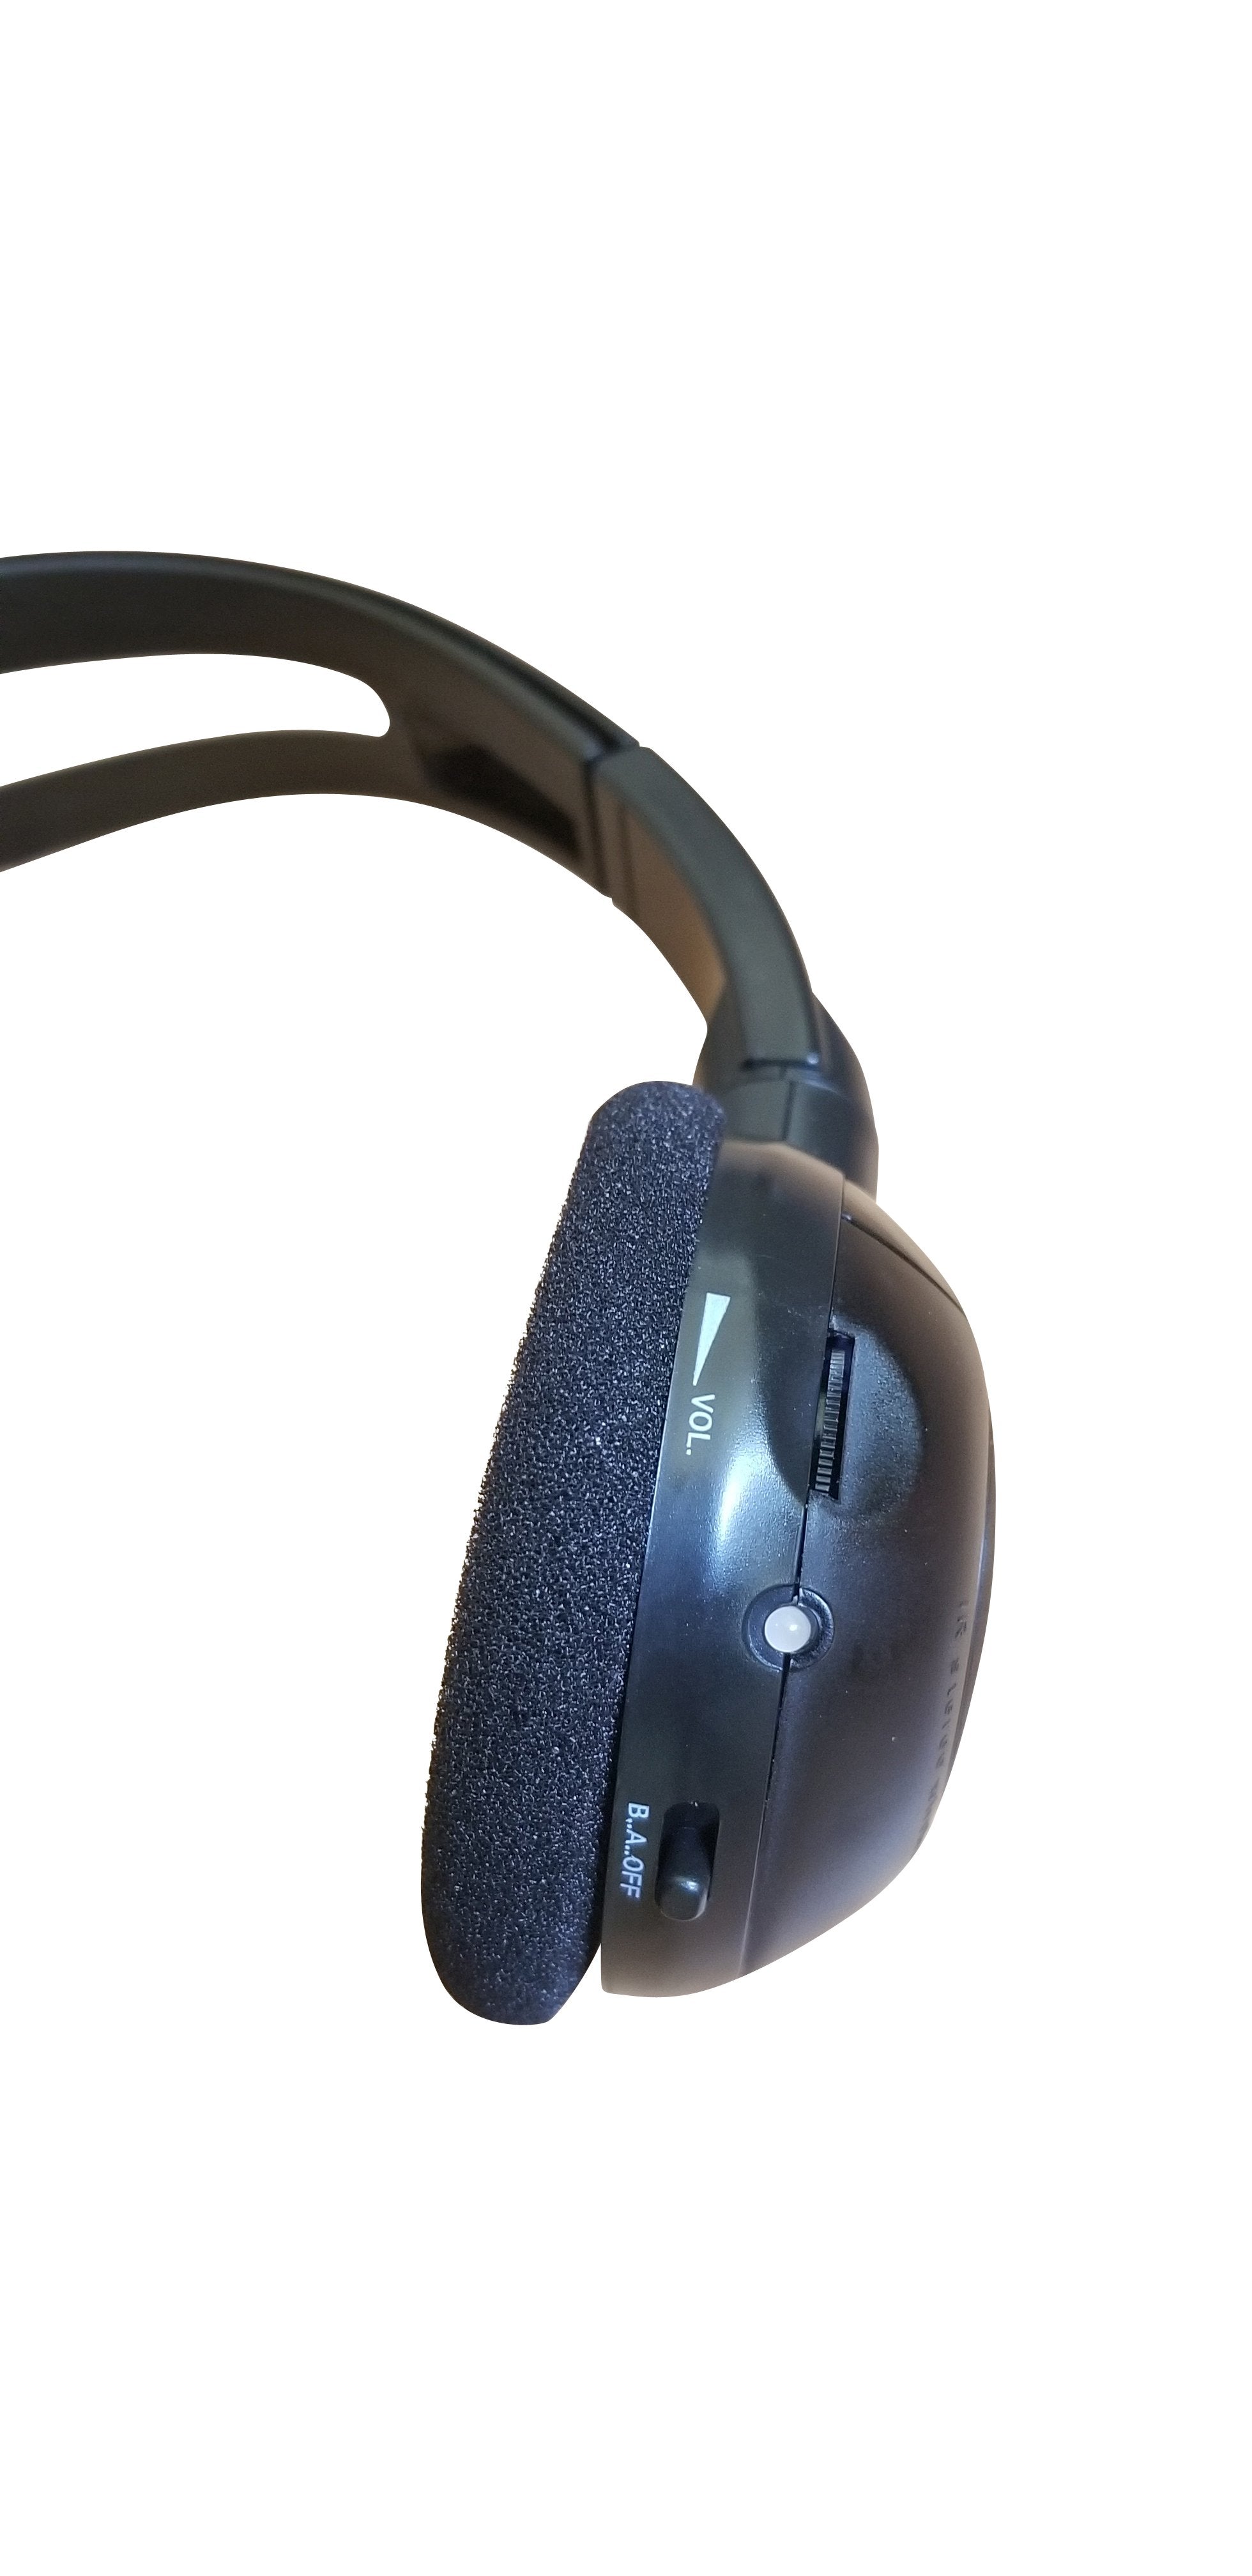 2012 GMC Savana Wireless DVD Headphone